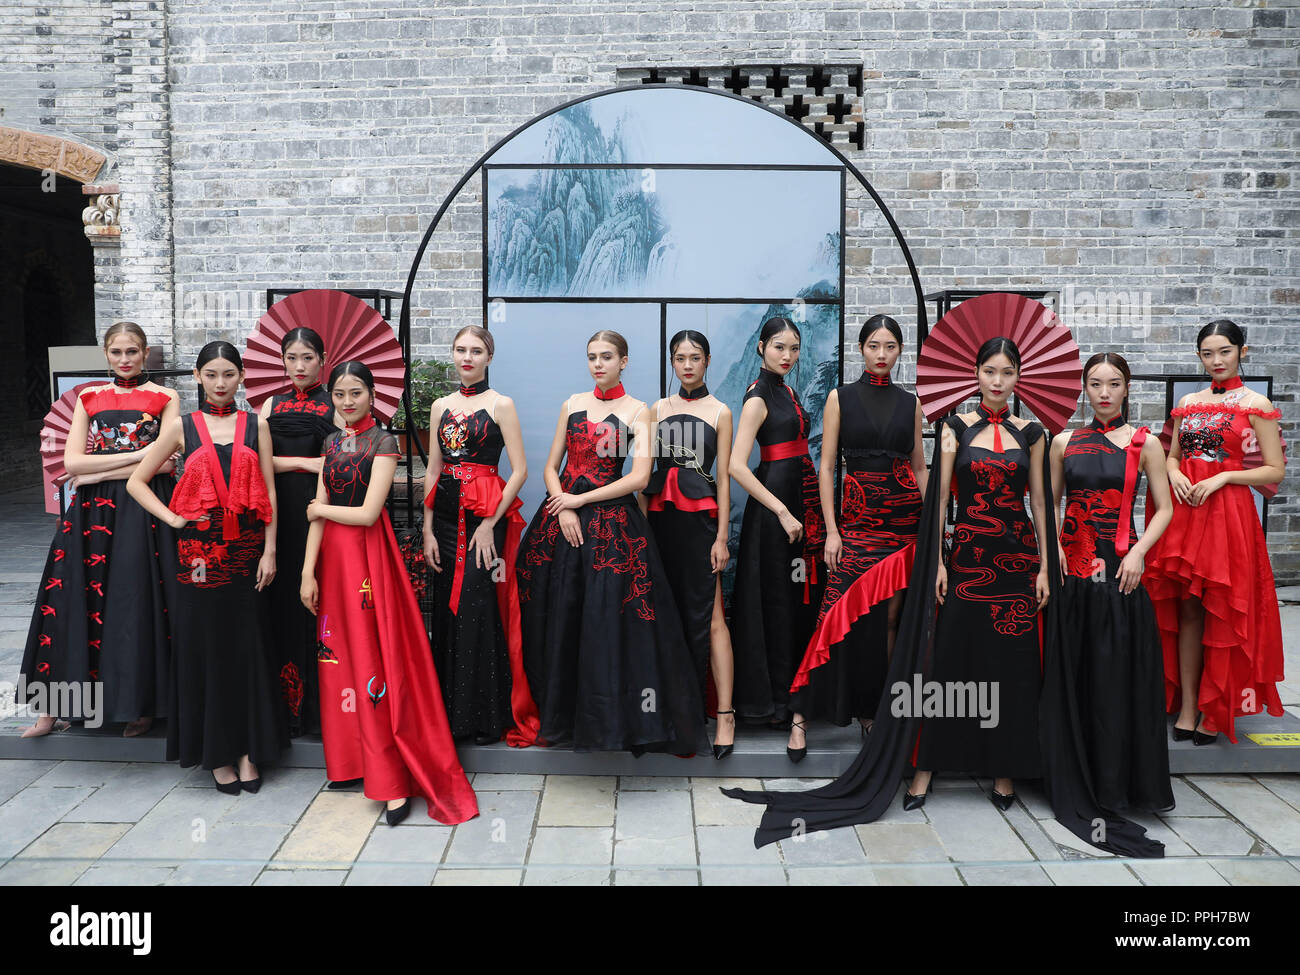 Dayi, la province chinoise du Sichuan. 26 Sep, 2018. Présenter les modèles traditionnels chinois, cheongsam robe femmes également connu sous le nom de Qipao cheongsam, lors d'un concours de dessin dans l'ancienne ville de Anren à Chengdu, dans le sud-ouest de la province chinoise du Sichuan, le 26 septembre 2018. Credit : Jiang Hongjing/Xinhua/Alamy Live News Banque D'Images